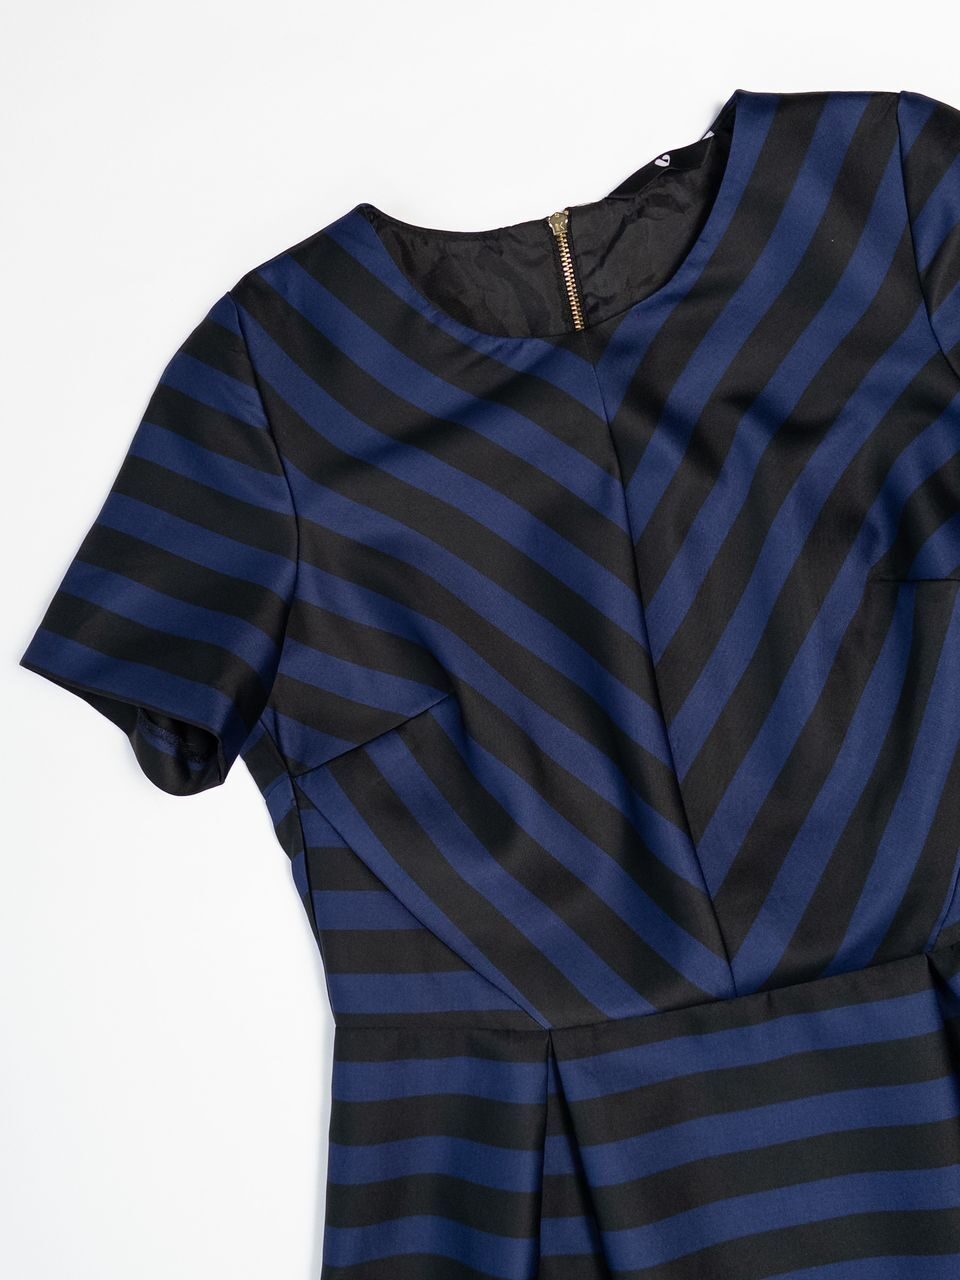 Платье из плотной ткани цвет синий /чёрный в полоску размер  UK 12 (rus 46) BY VERY